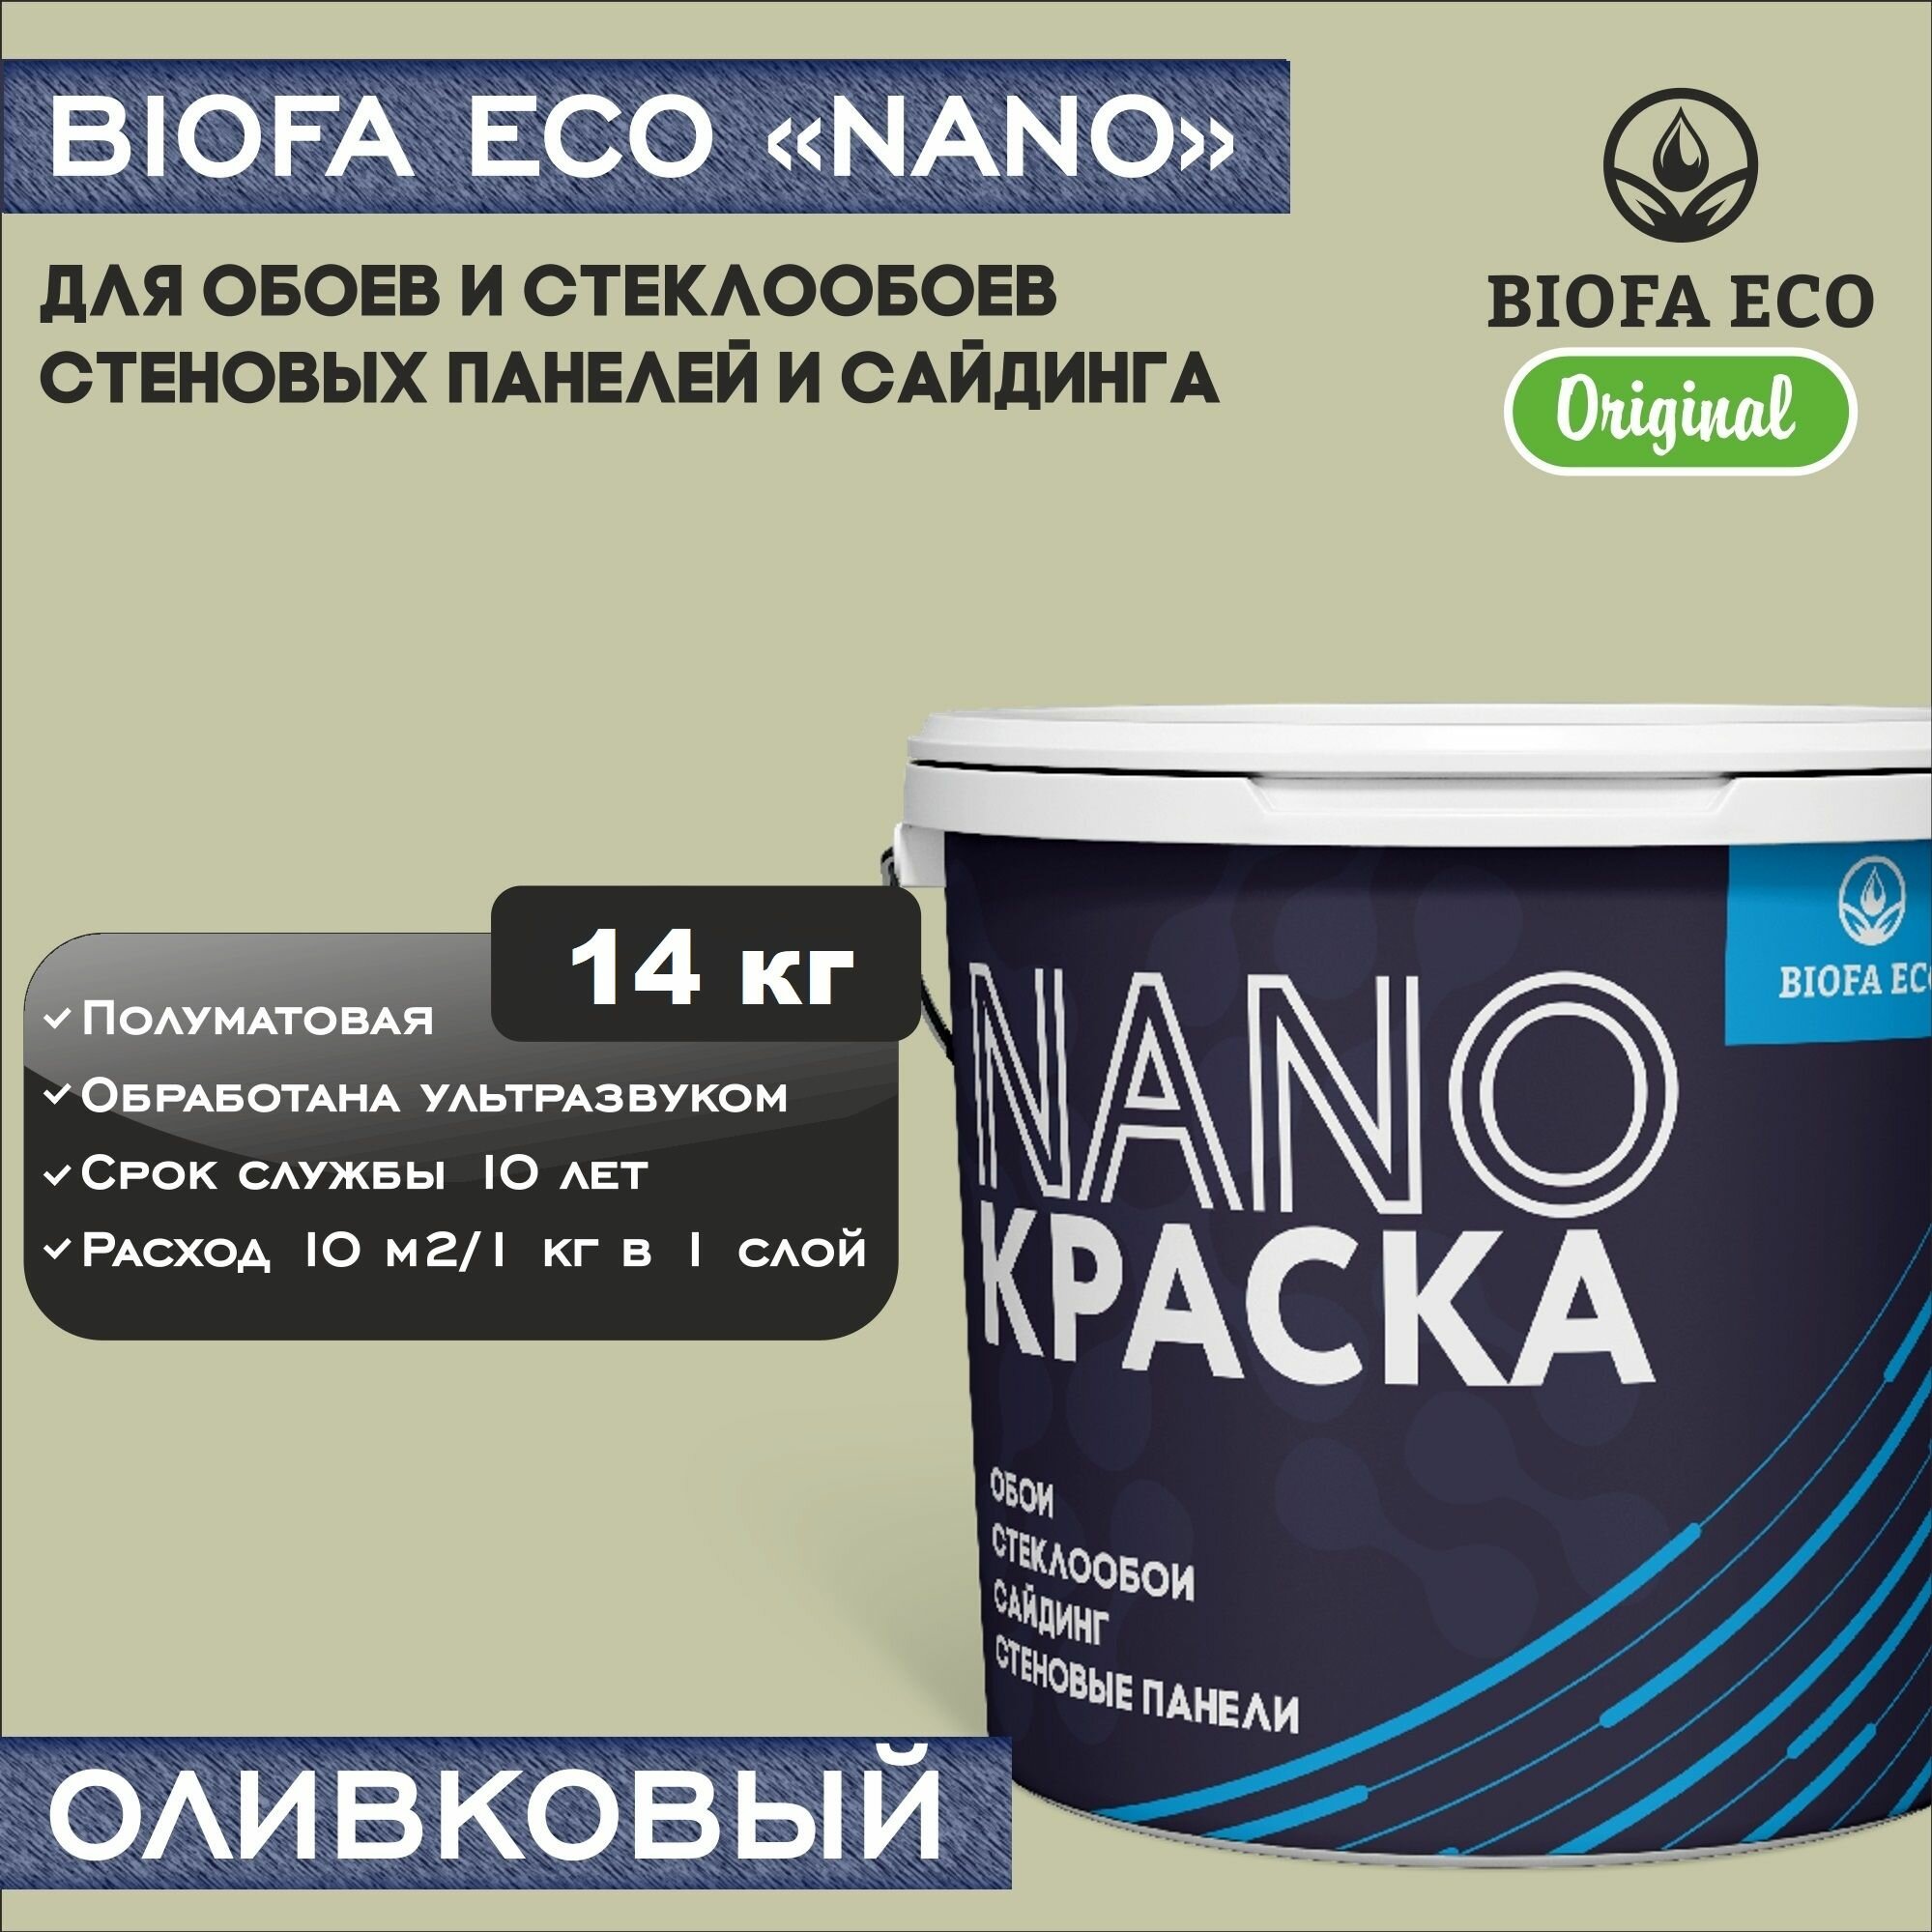 Краска BIOFA ECO NANO для обоев, стеклообоев, стеновых панелей и сайдинга, адгезионная, полуматовая, цвет оливковый, 14 кг